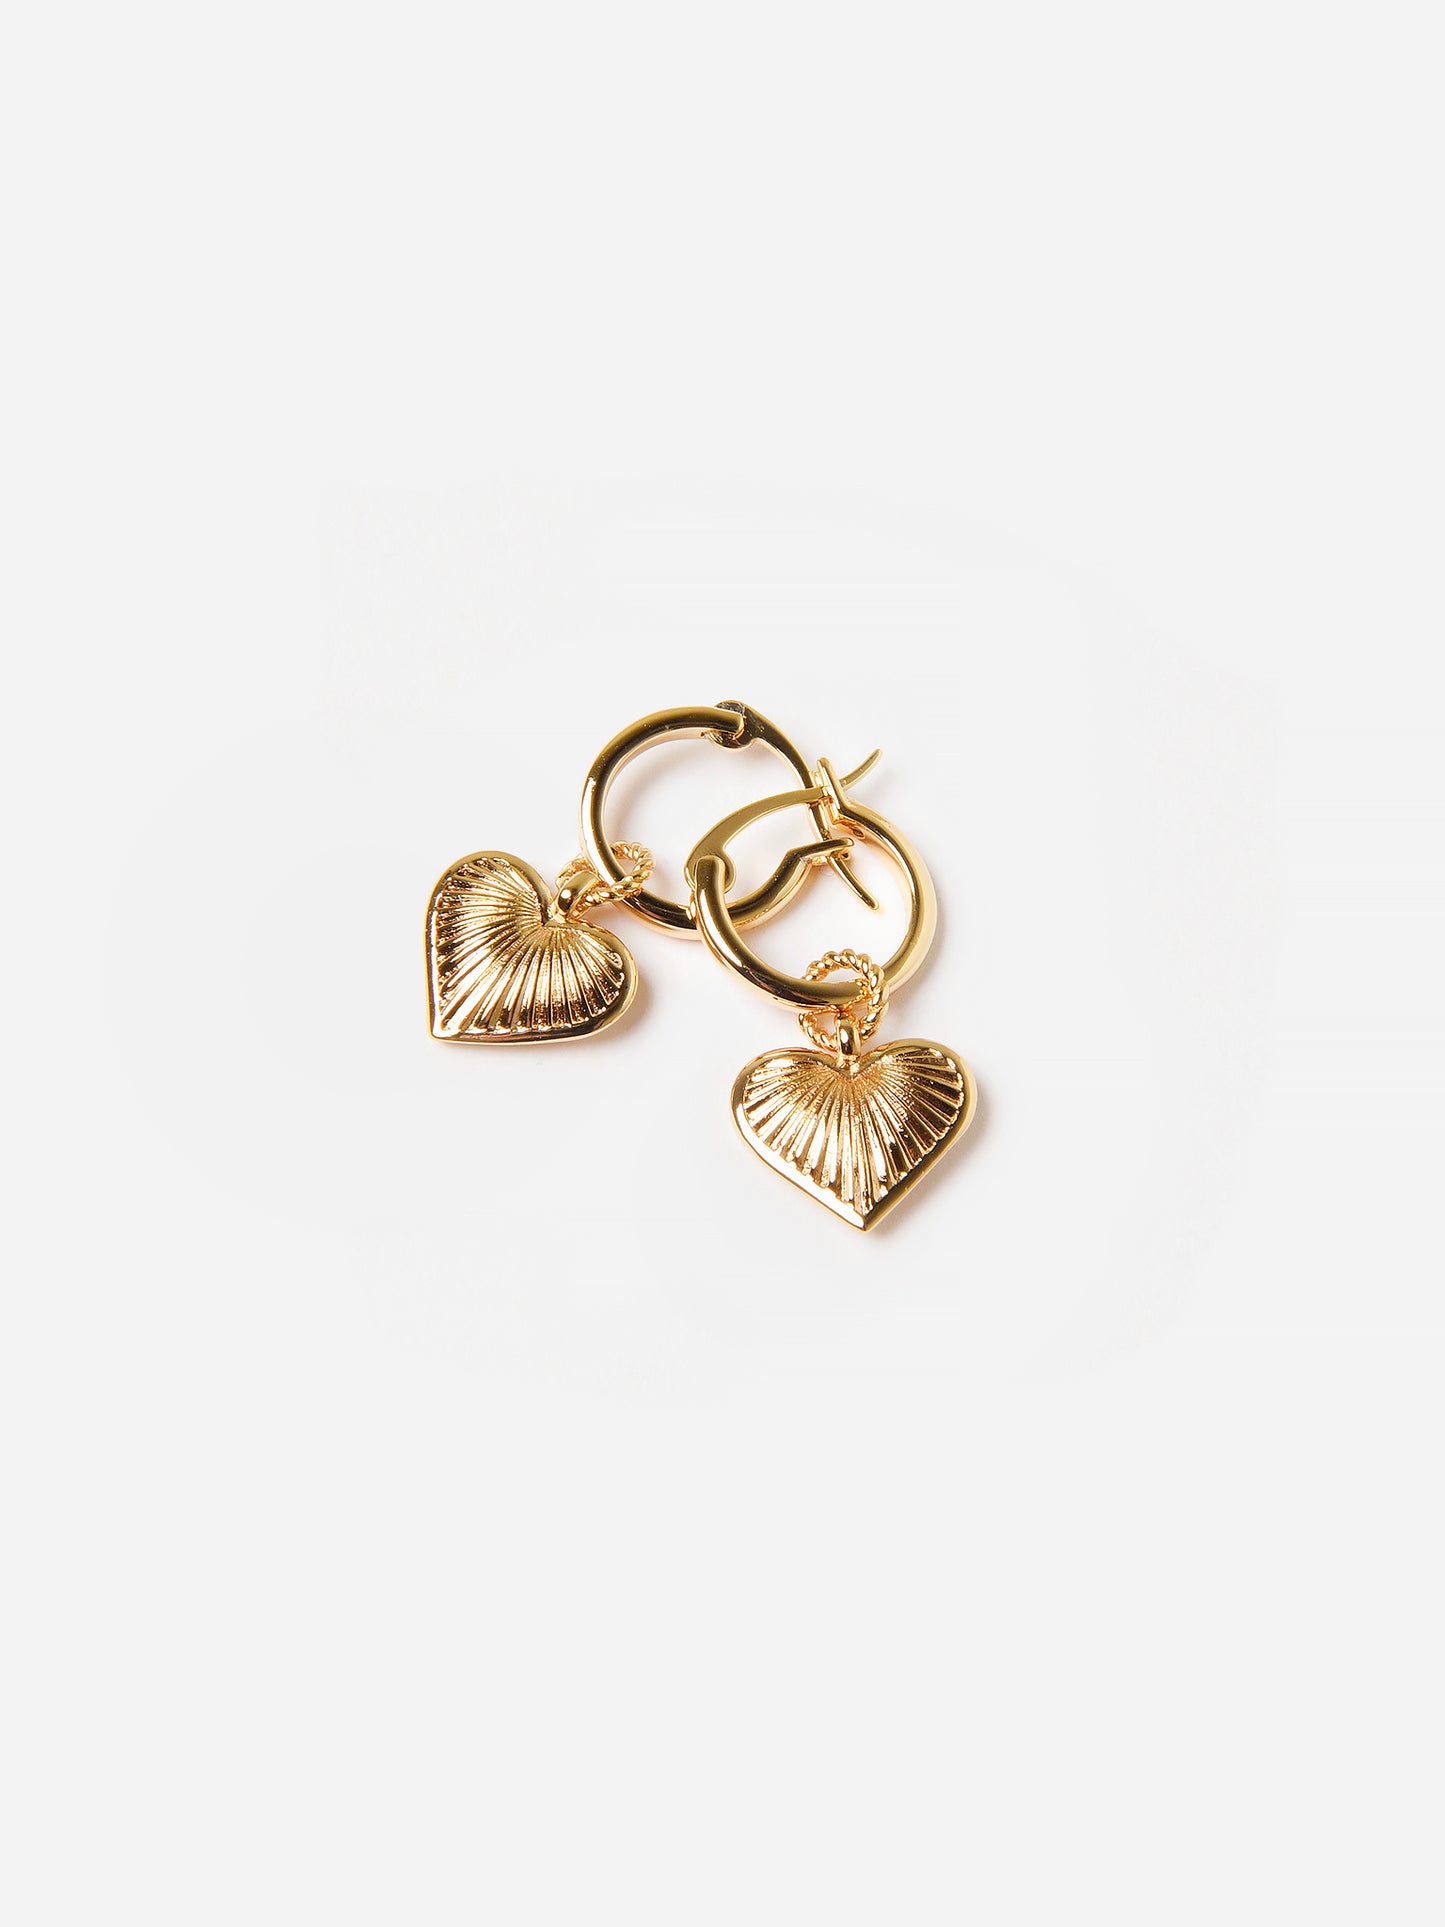 Leeada Jewelry Women's Venus Heart Earrings